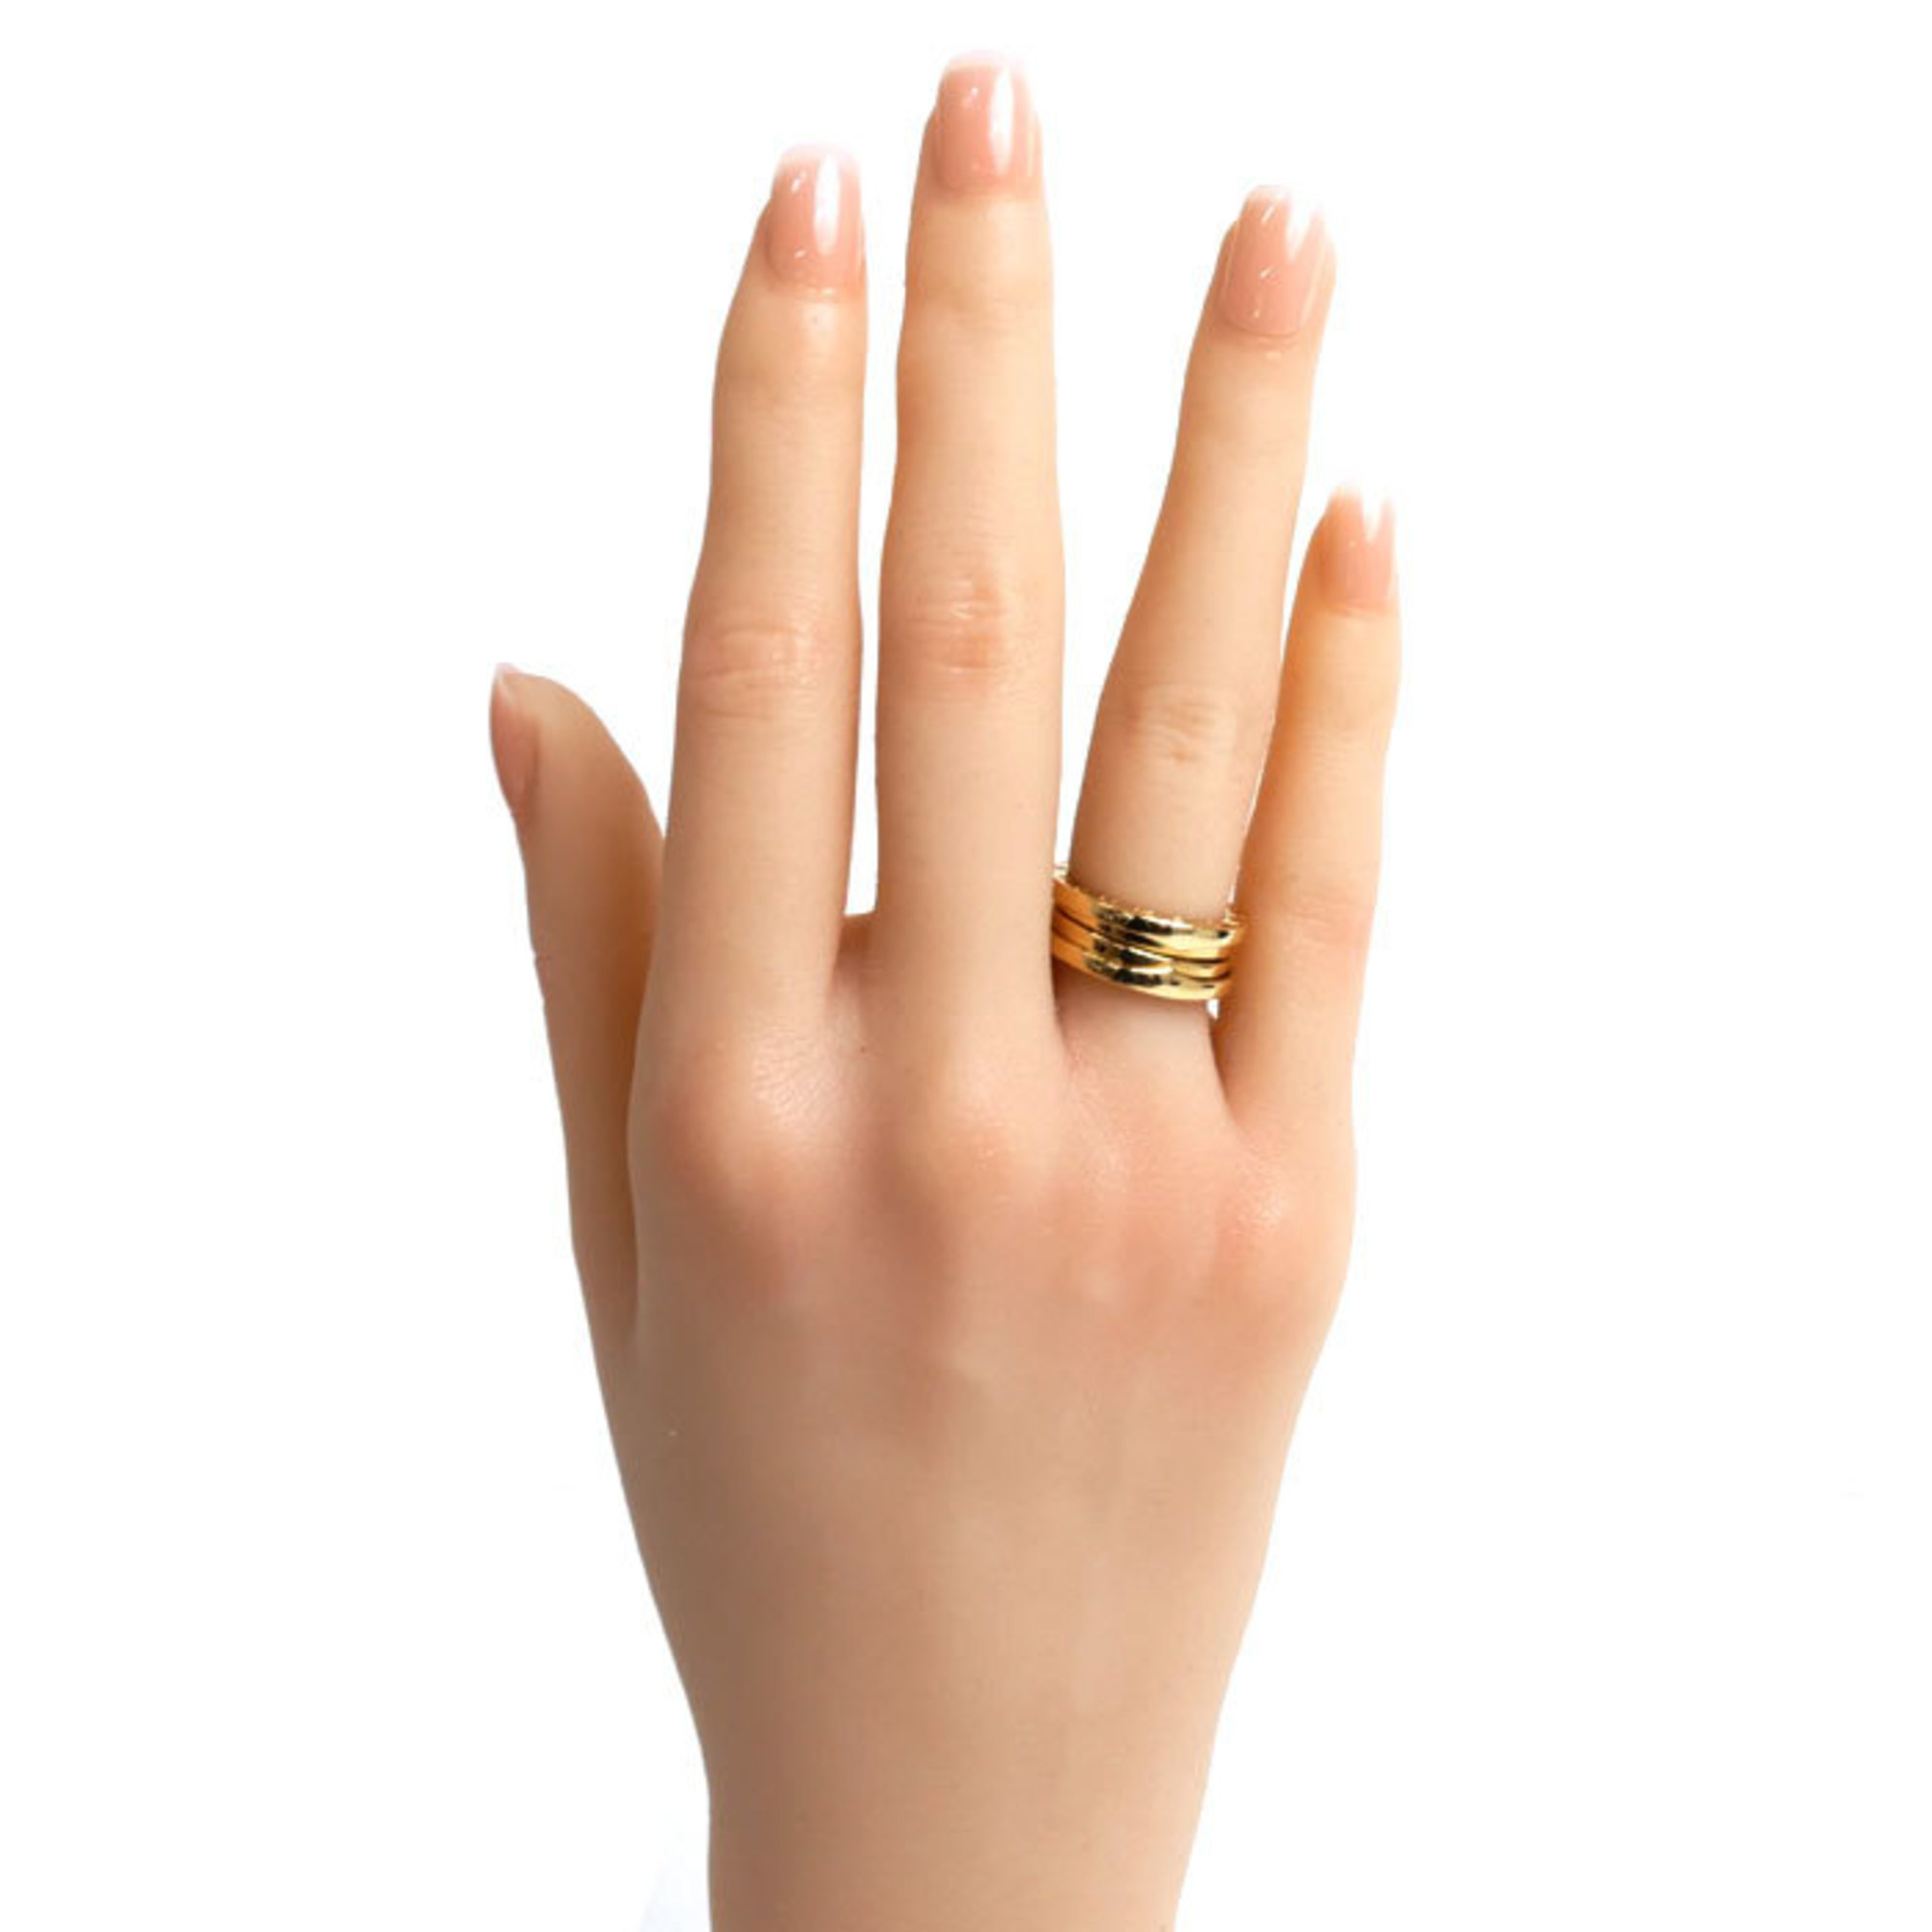 BVLGARI Bvlgari K18YG Yellow Gold B-ZERO1 Three-Band Ring, Size 6.5, 47, 7.7g, Women's